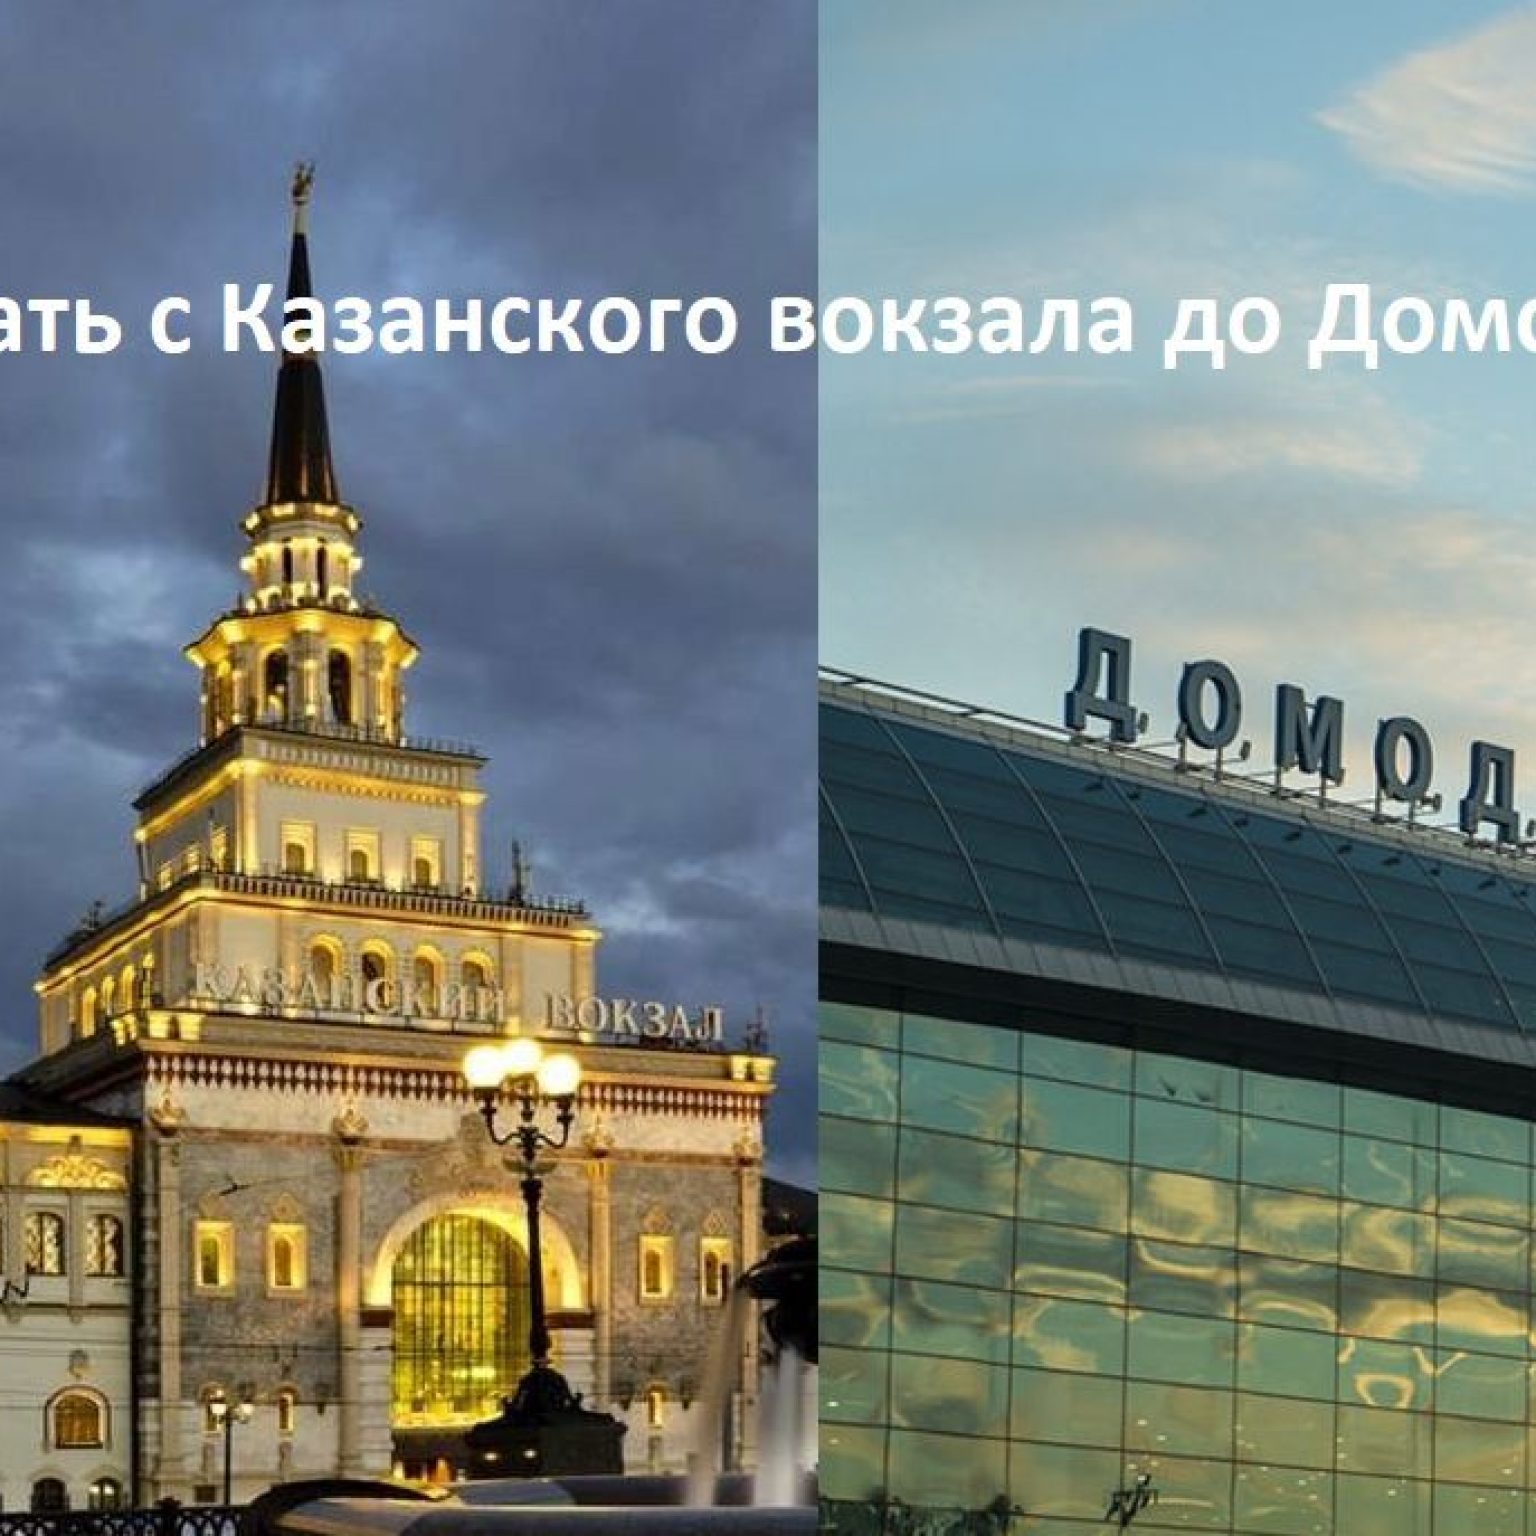 Как доехать с Казанского вокзала до Домодедово - аэроэкспресс, метро, автобусы до аэропорта